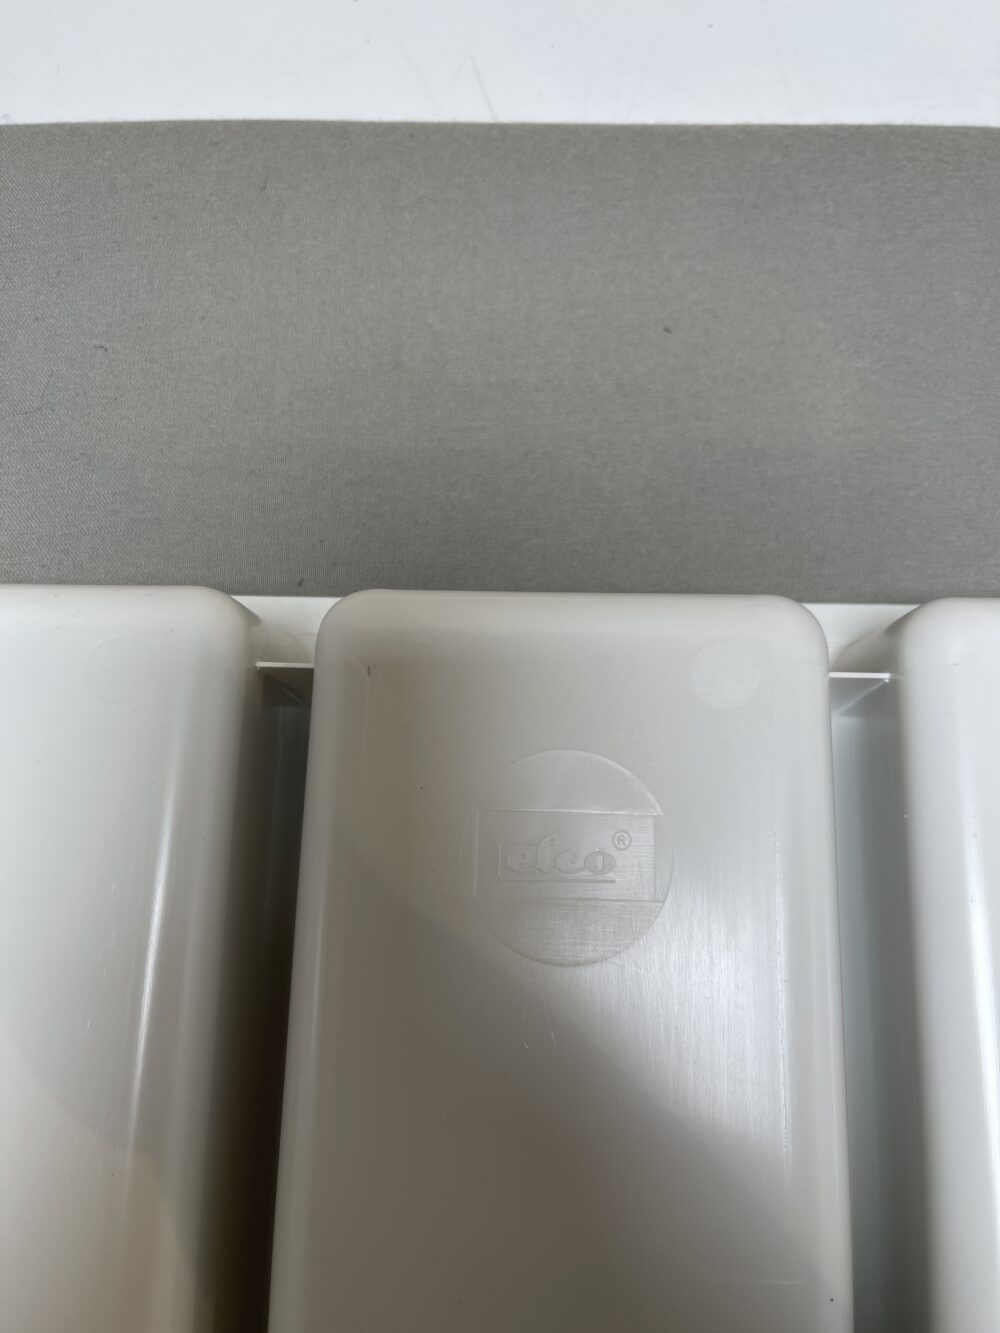 Elco Besteckkasten Besteckeinsatz 50,5 x 41 cm weiß